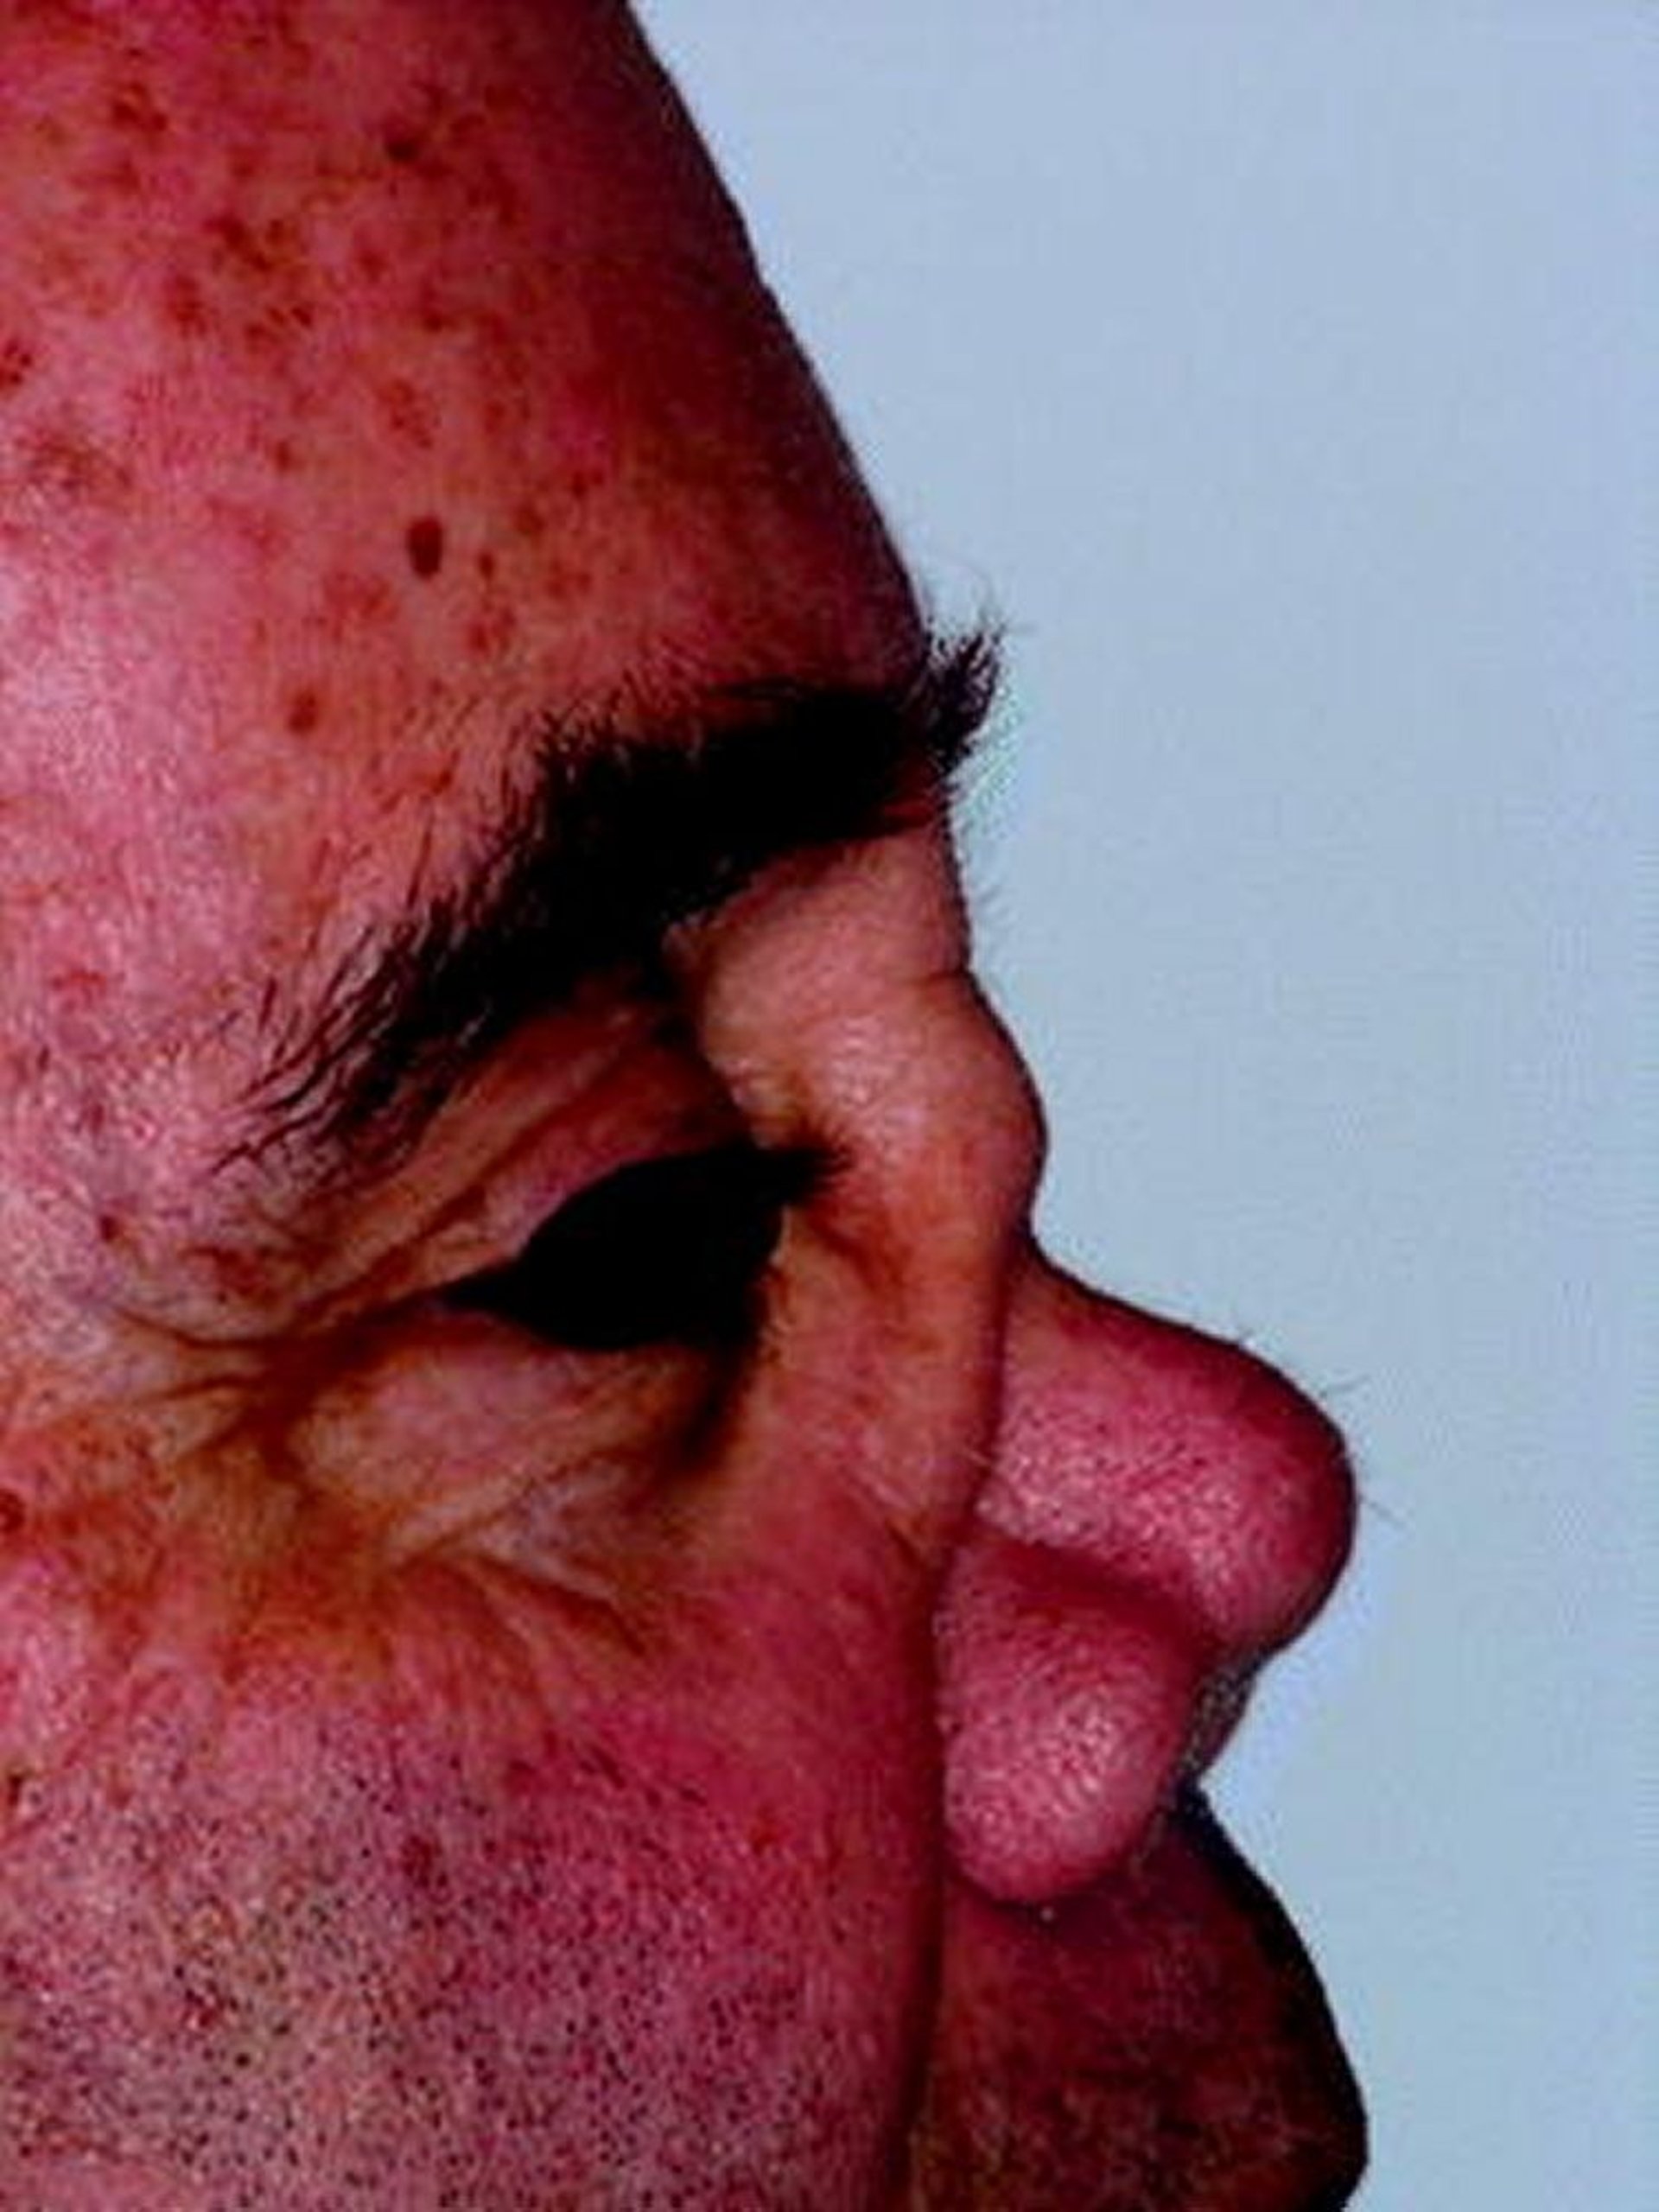 Deformidade de nariz em sela na granulomatose com poliangeíte (GPA)